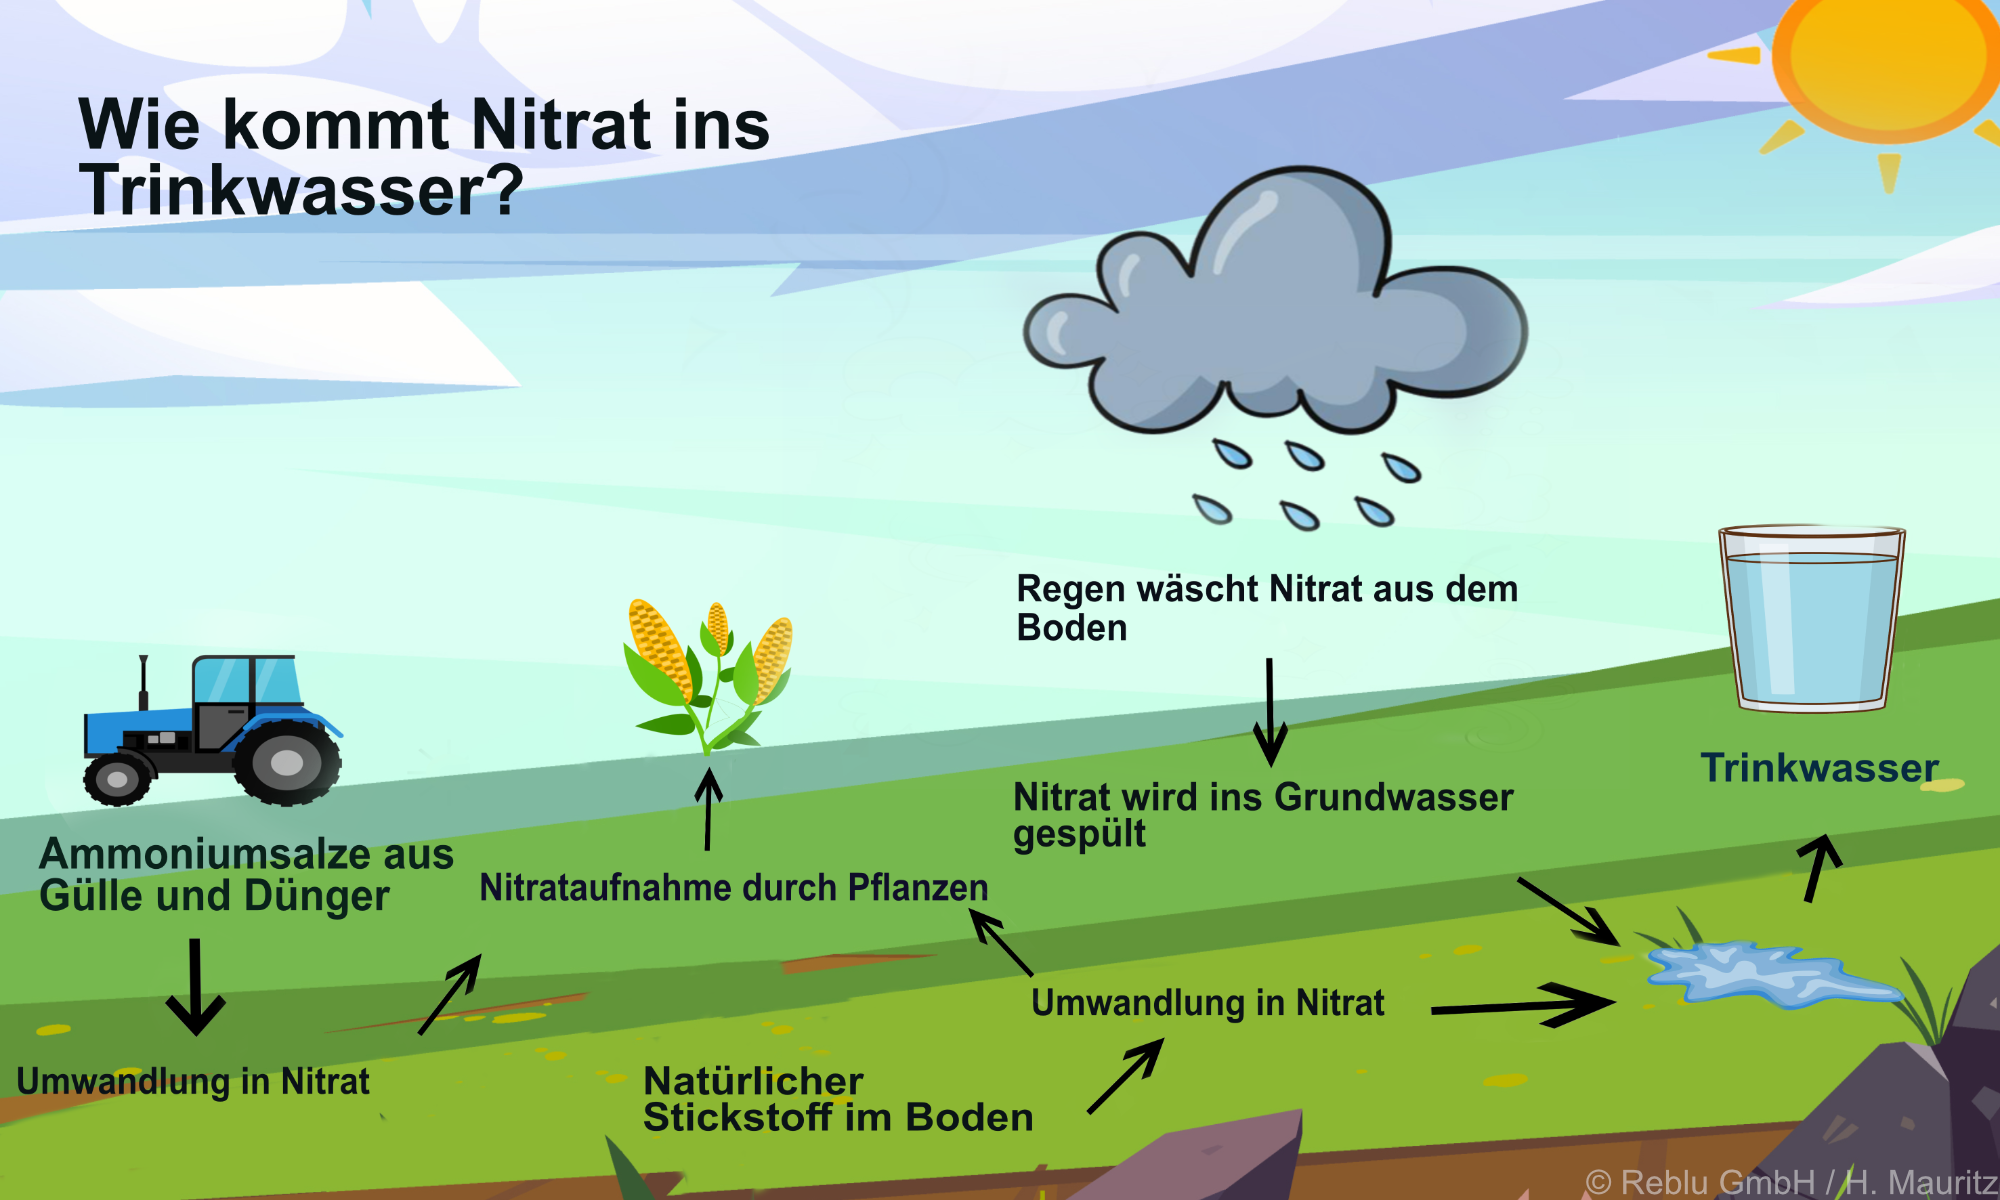 Nitrat kommt durch Dünger, Gesteins-Auswaschungen oder die Umwandlung aus natürlich vorkommendem Stickstoff in den Boden.  Über das Grundwasser kann es dann in unser Trinkwasser geraten. 